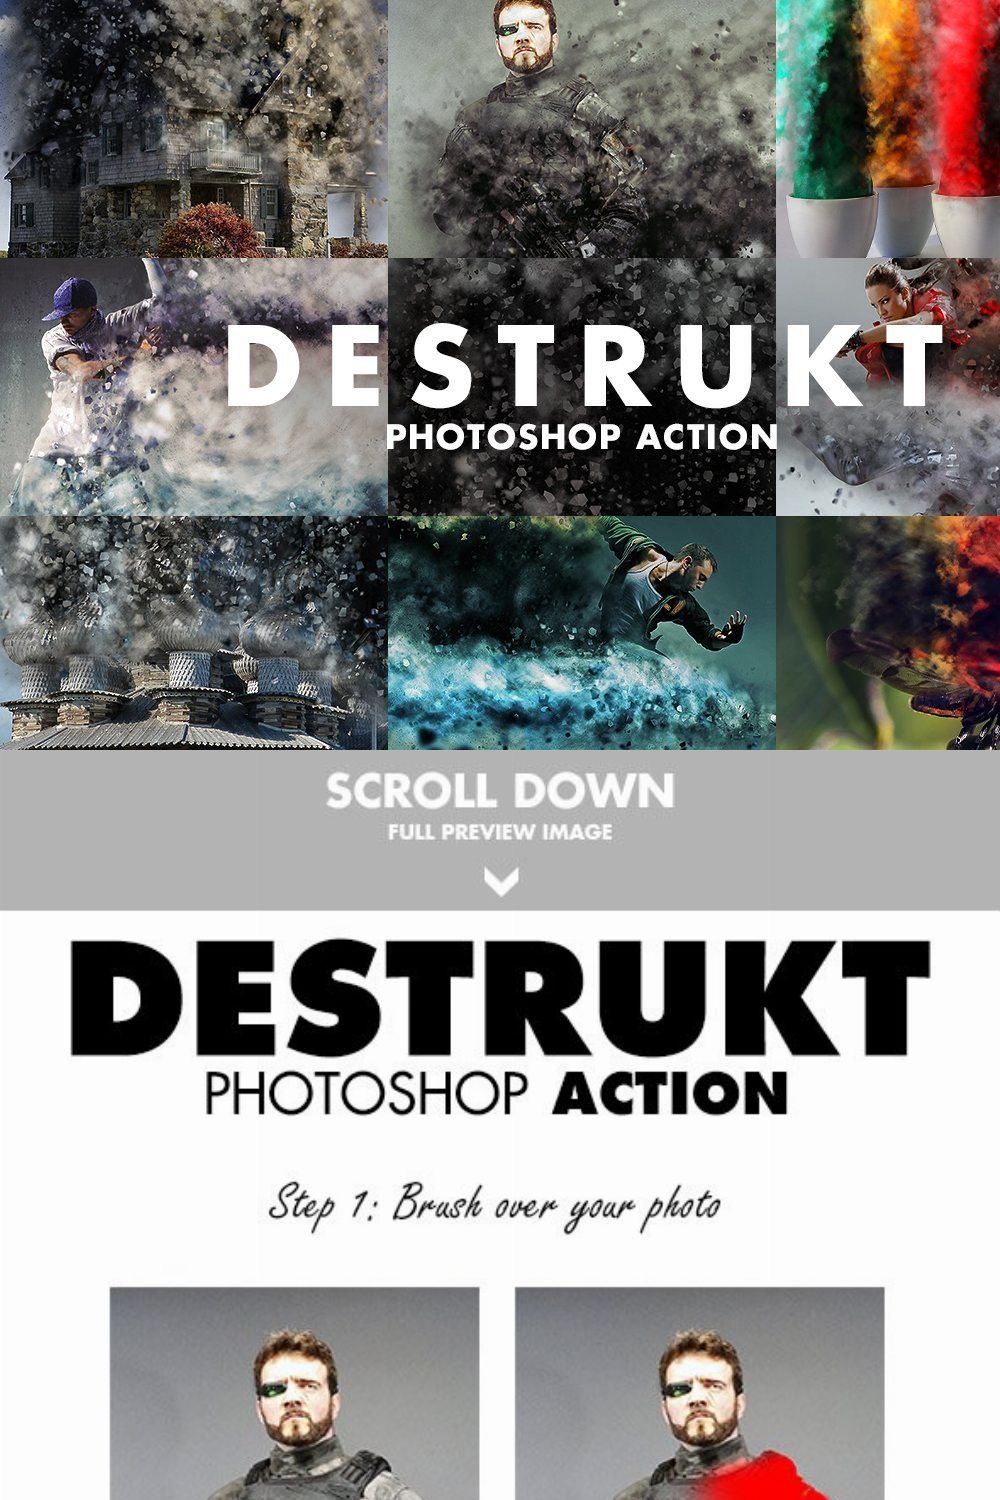 Destrukt Photoshop Action pinterest preview image.